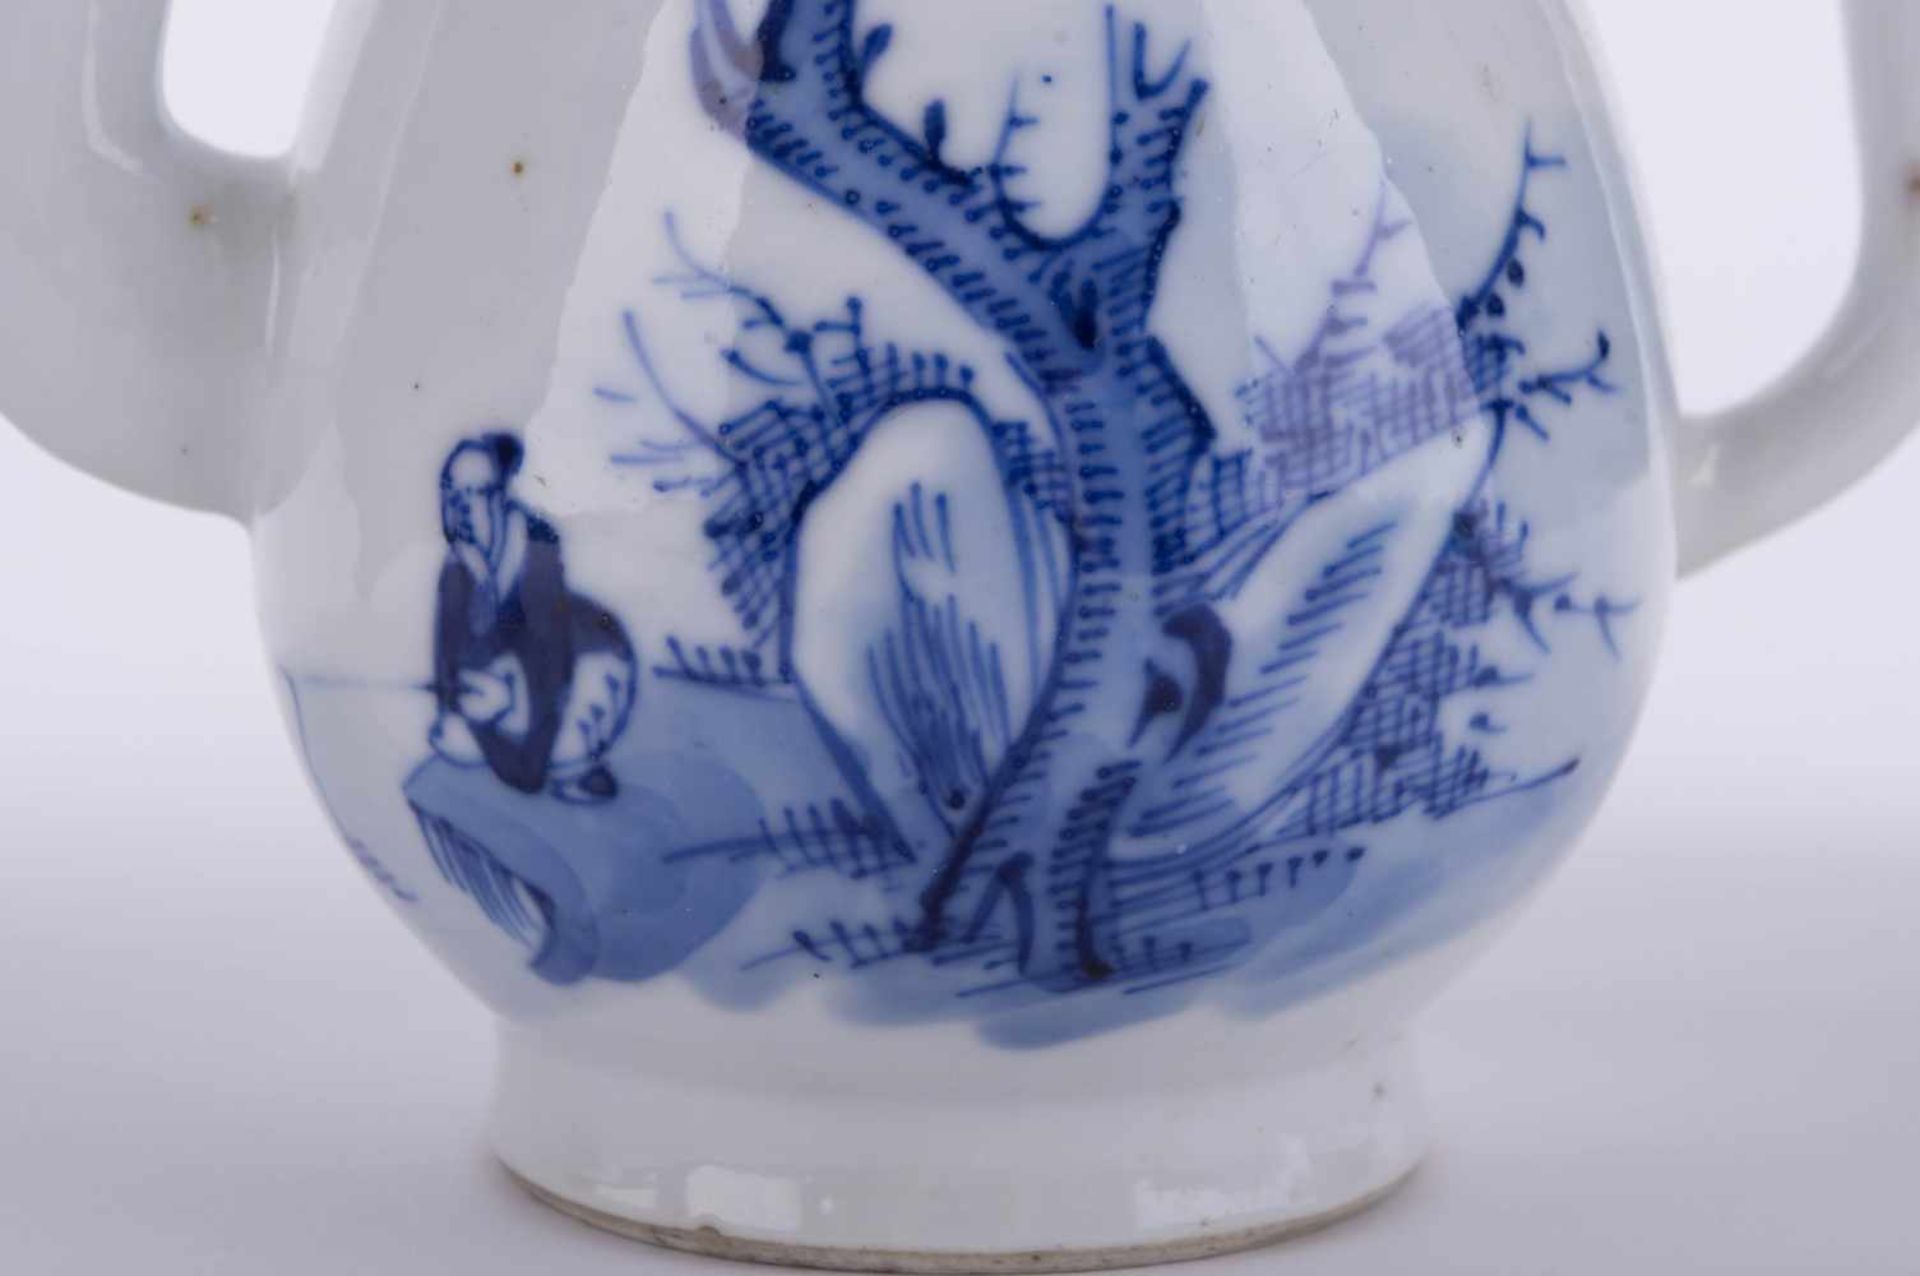 Kanne China 19. Jhd. / Pot, China 19th century blau weiß Malerei, unterm Stand alte Sammlungsnummer, - Image 4 of 5